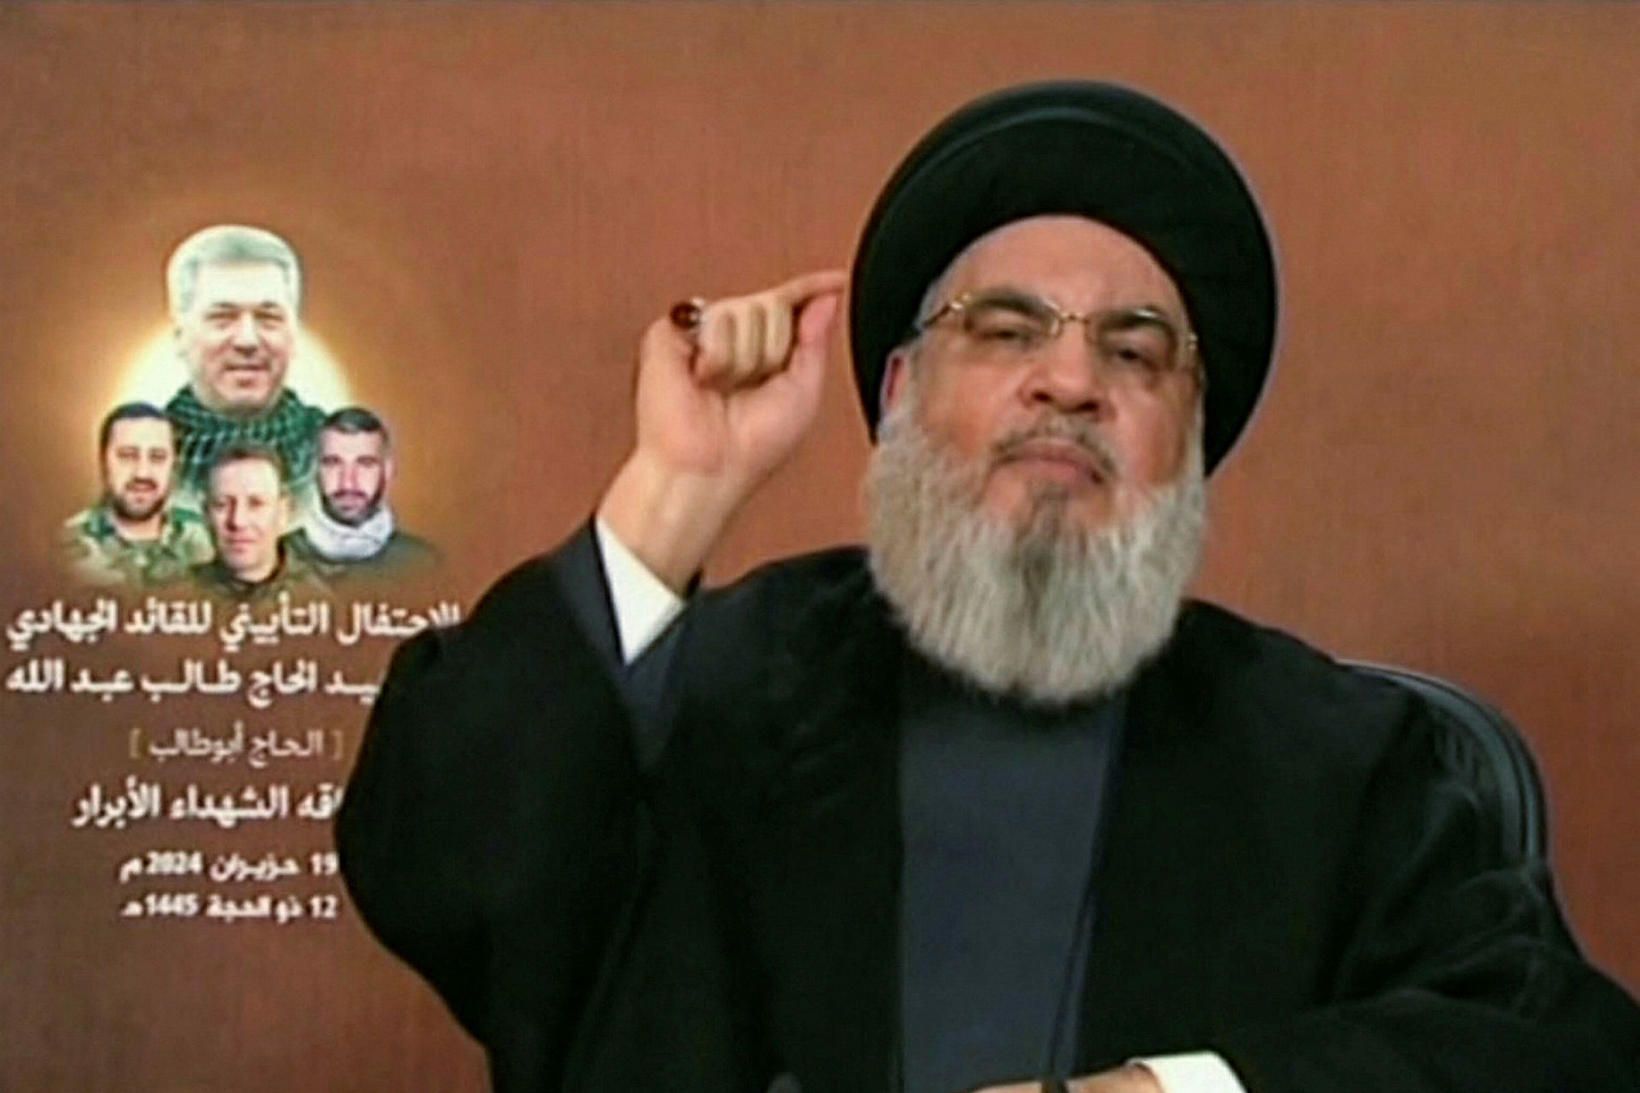 Hassan Nasrallah í sjónvarpsávarpi sínu í dag.